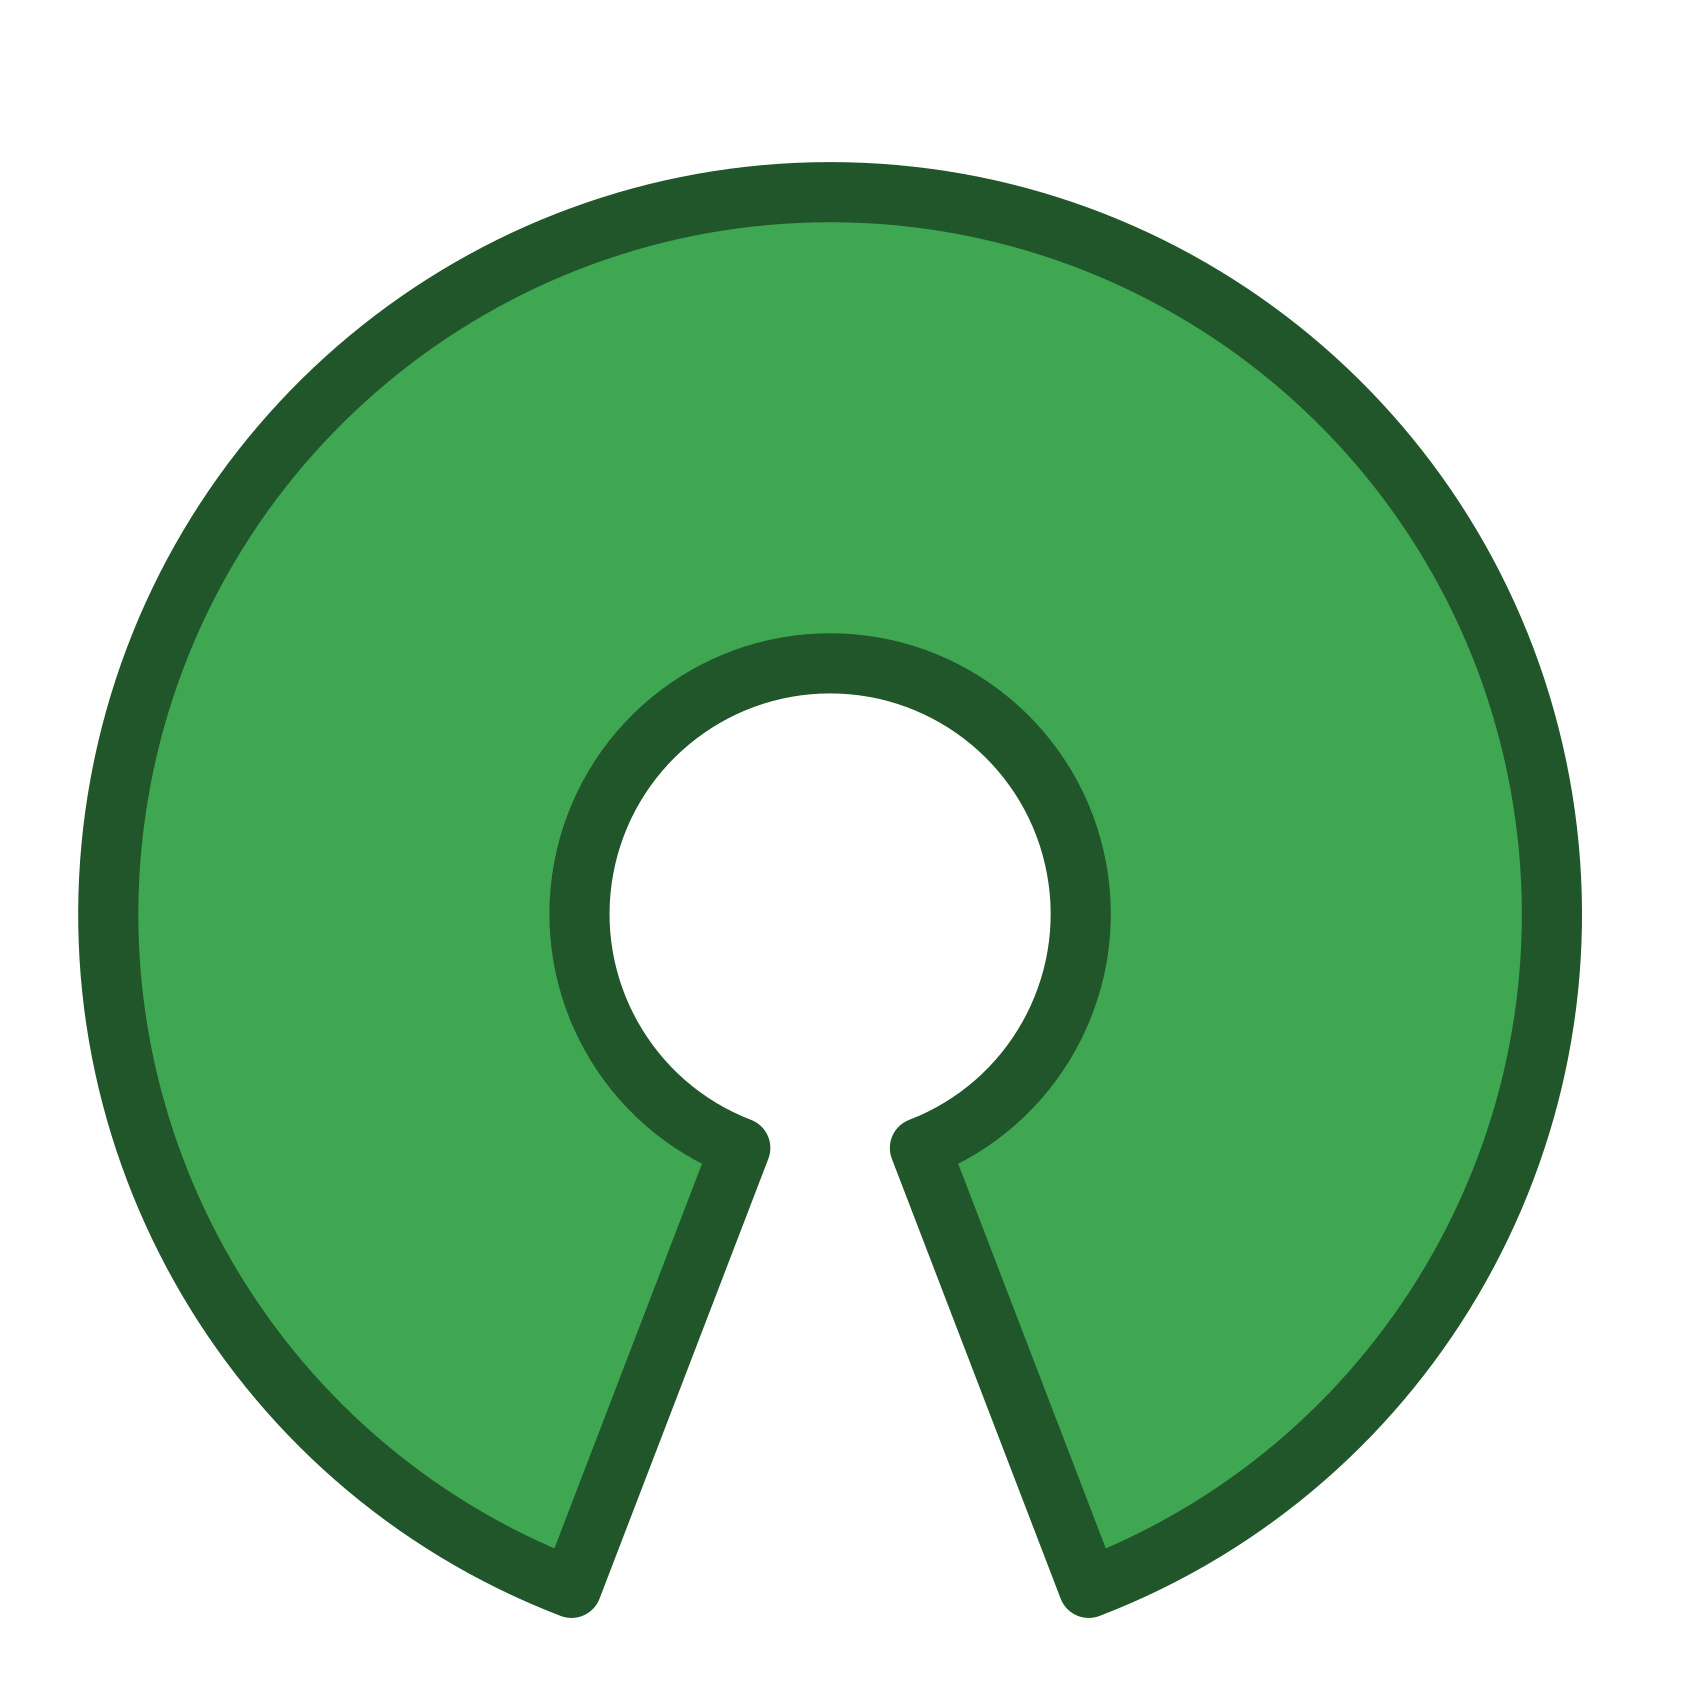 Imagen que muestra el símbolo del open source